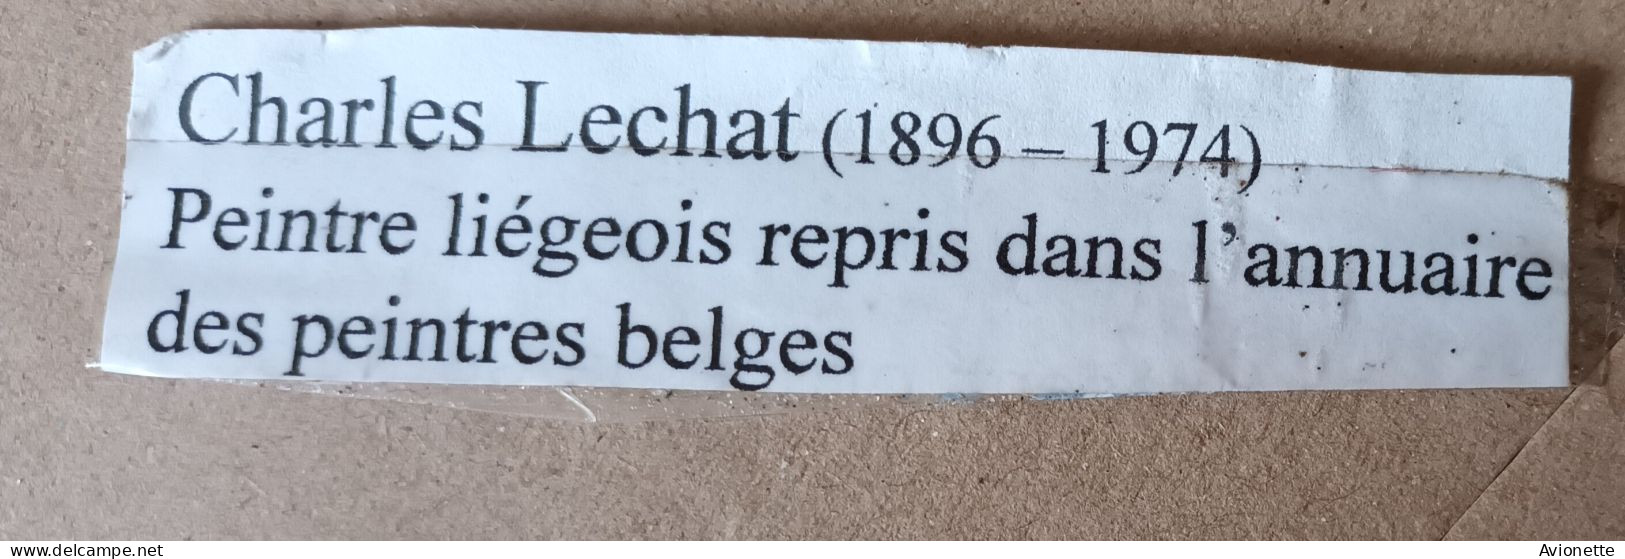 Croquis Dessin Championnat De France De Boules Casablanca 1951 / Charles Lechat / 26 X 35,5 CM - Dessins